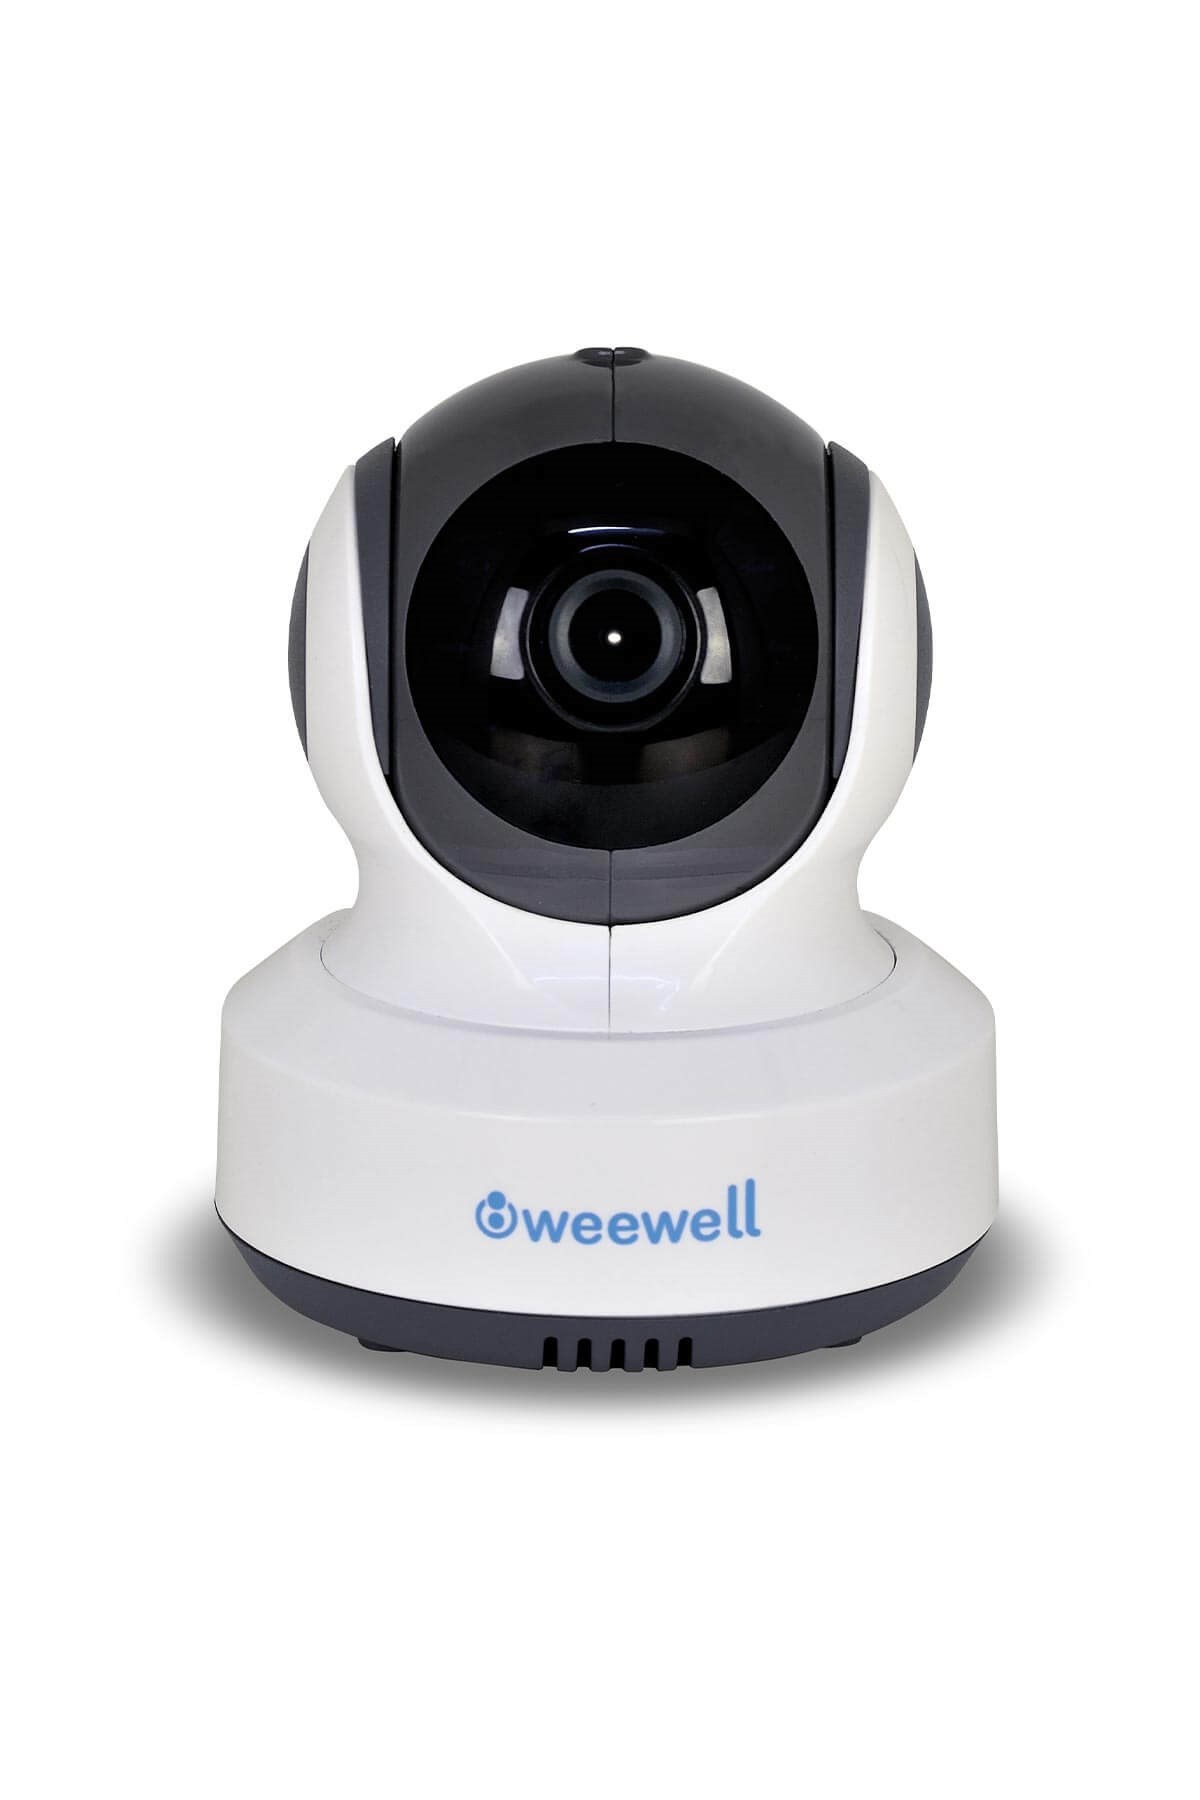 Weewell WMV870R Wifi Dijital Bebek İzleme Kameralı Telsiz